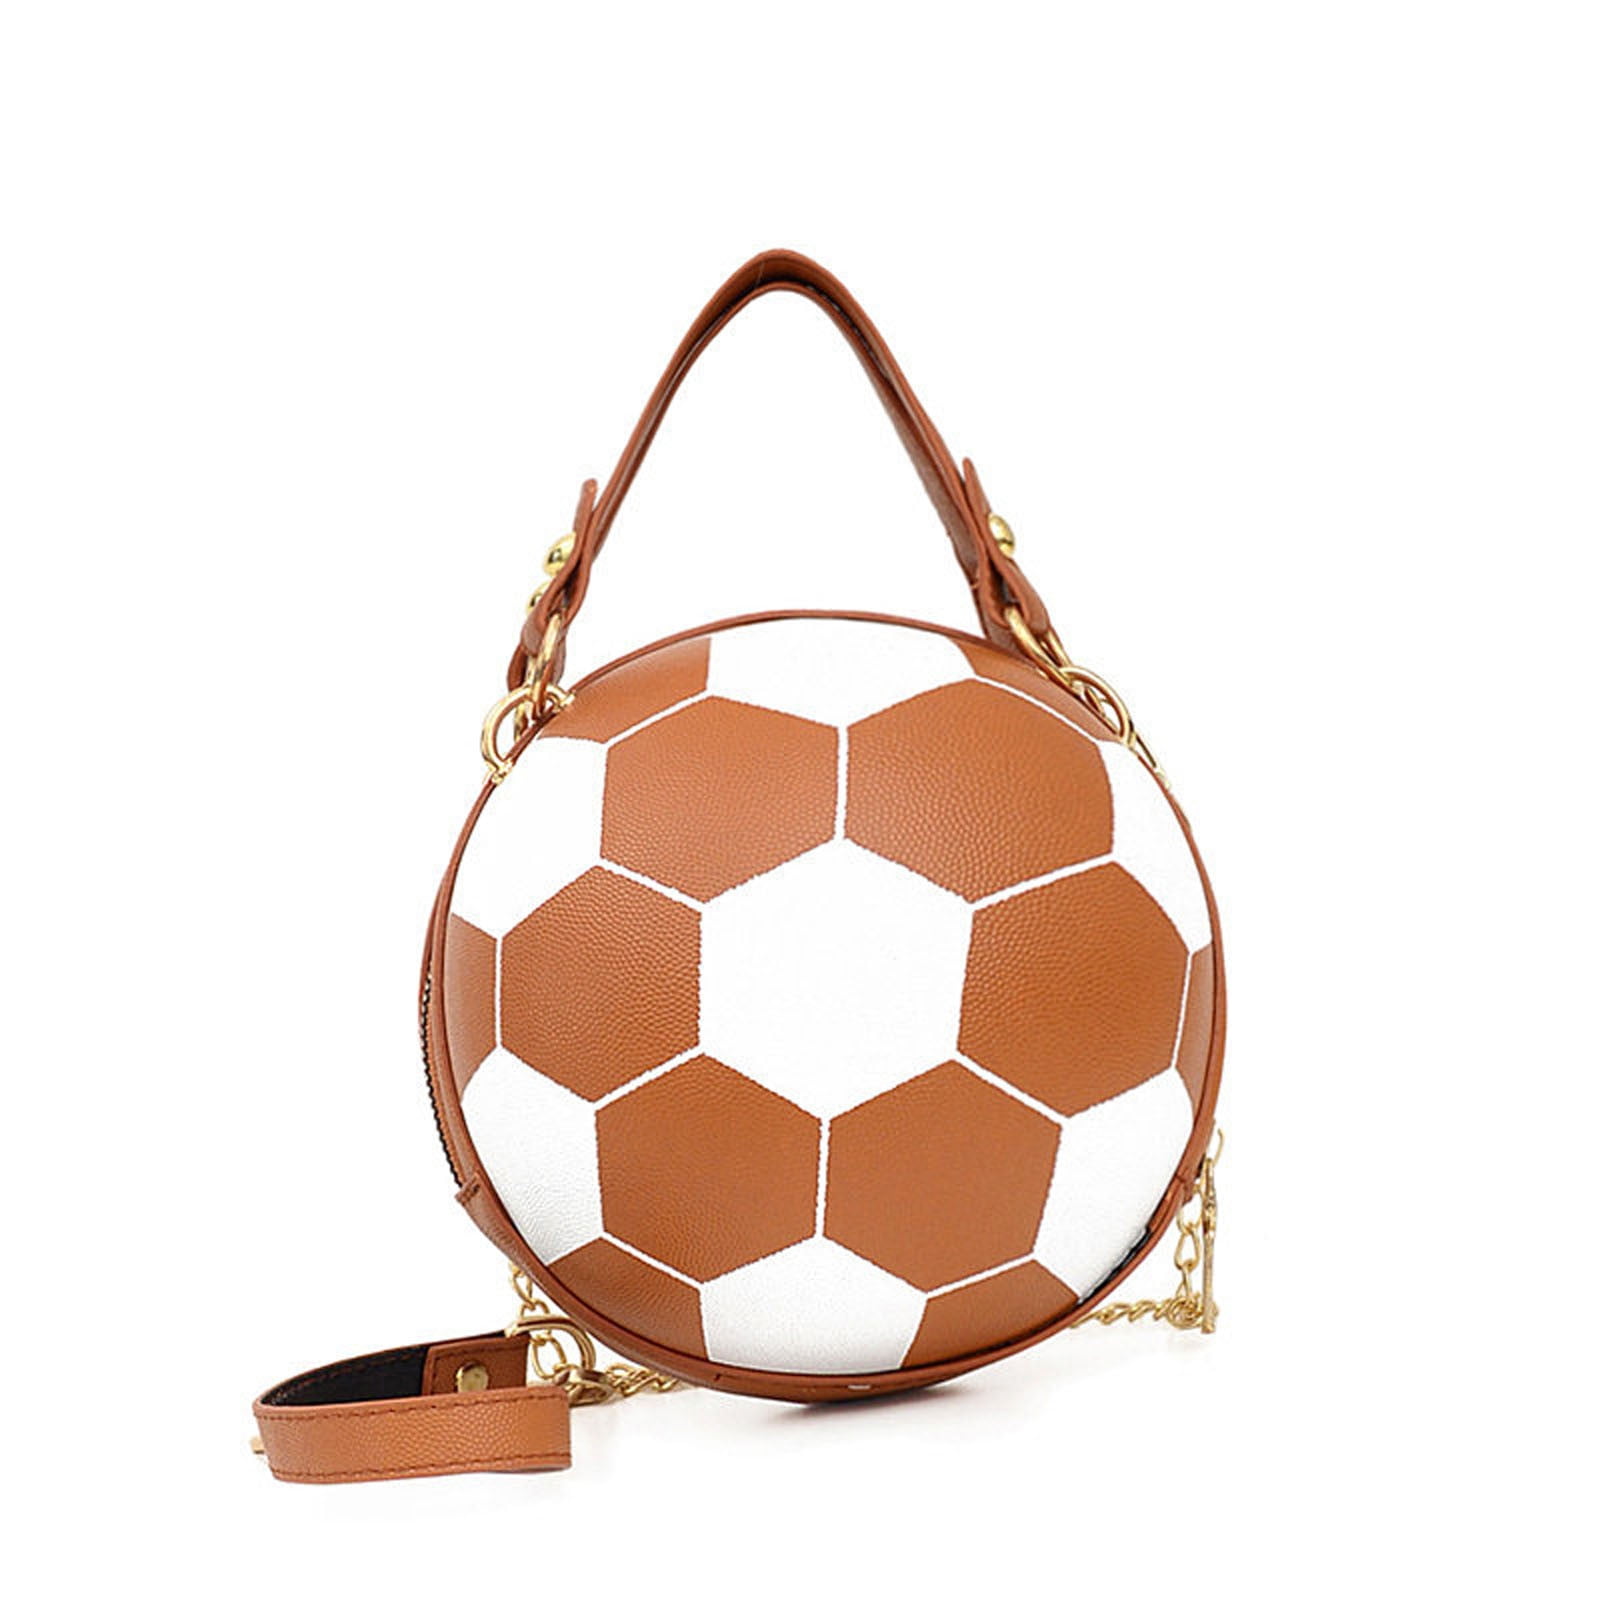 EQWLJWE Unique Football Shaped Cross Body Bag Round Handbag PU